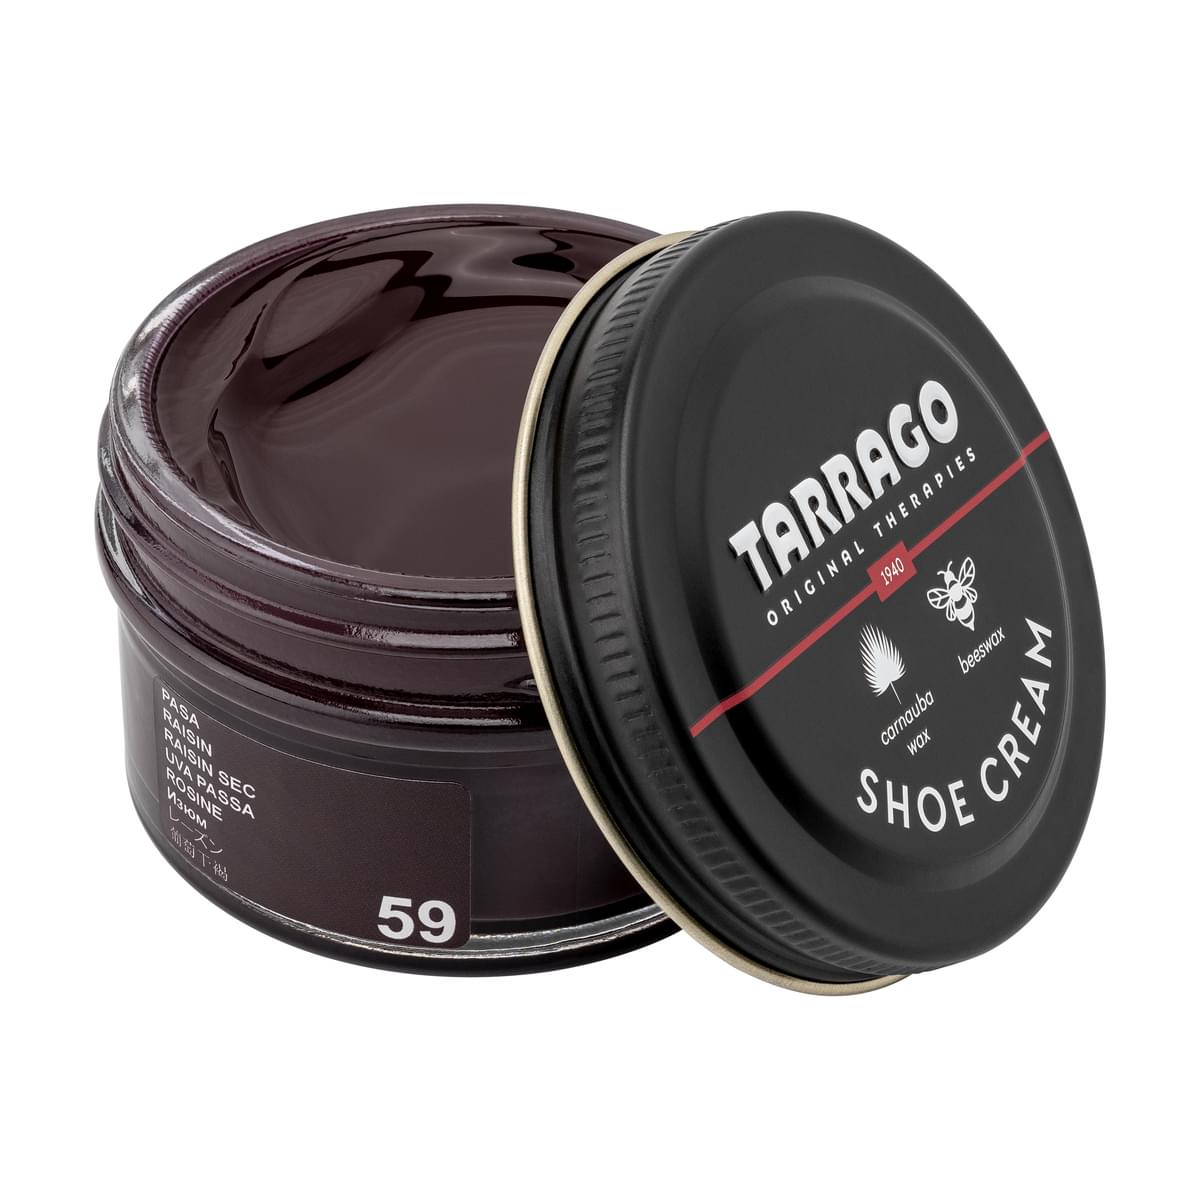 Tarrago Shoe Cream  - Raisin - 59